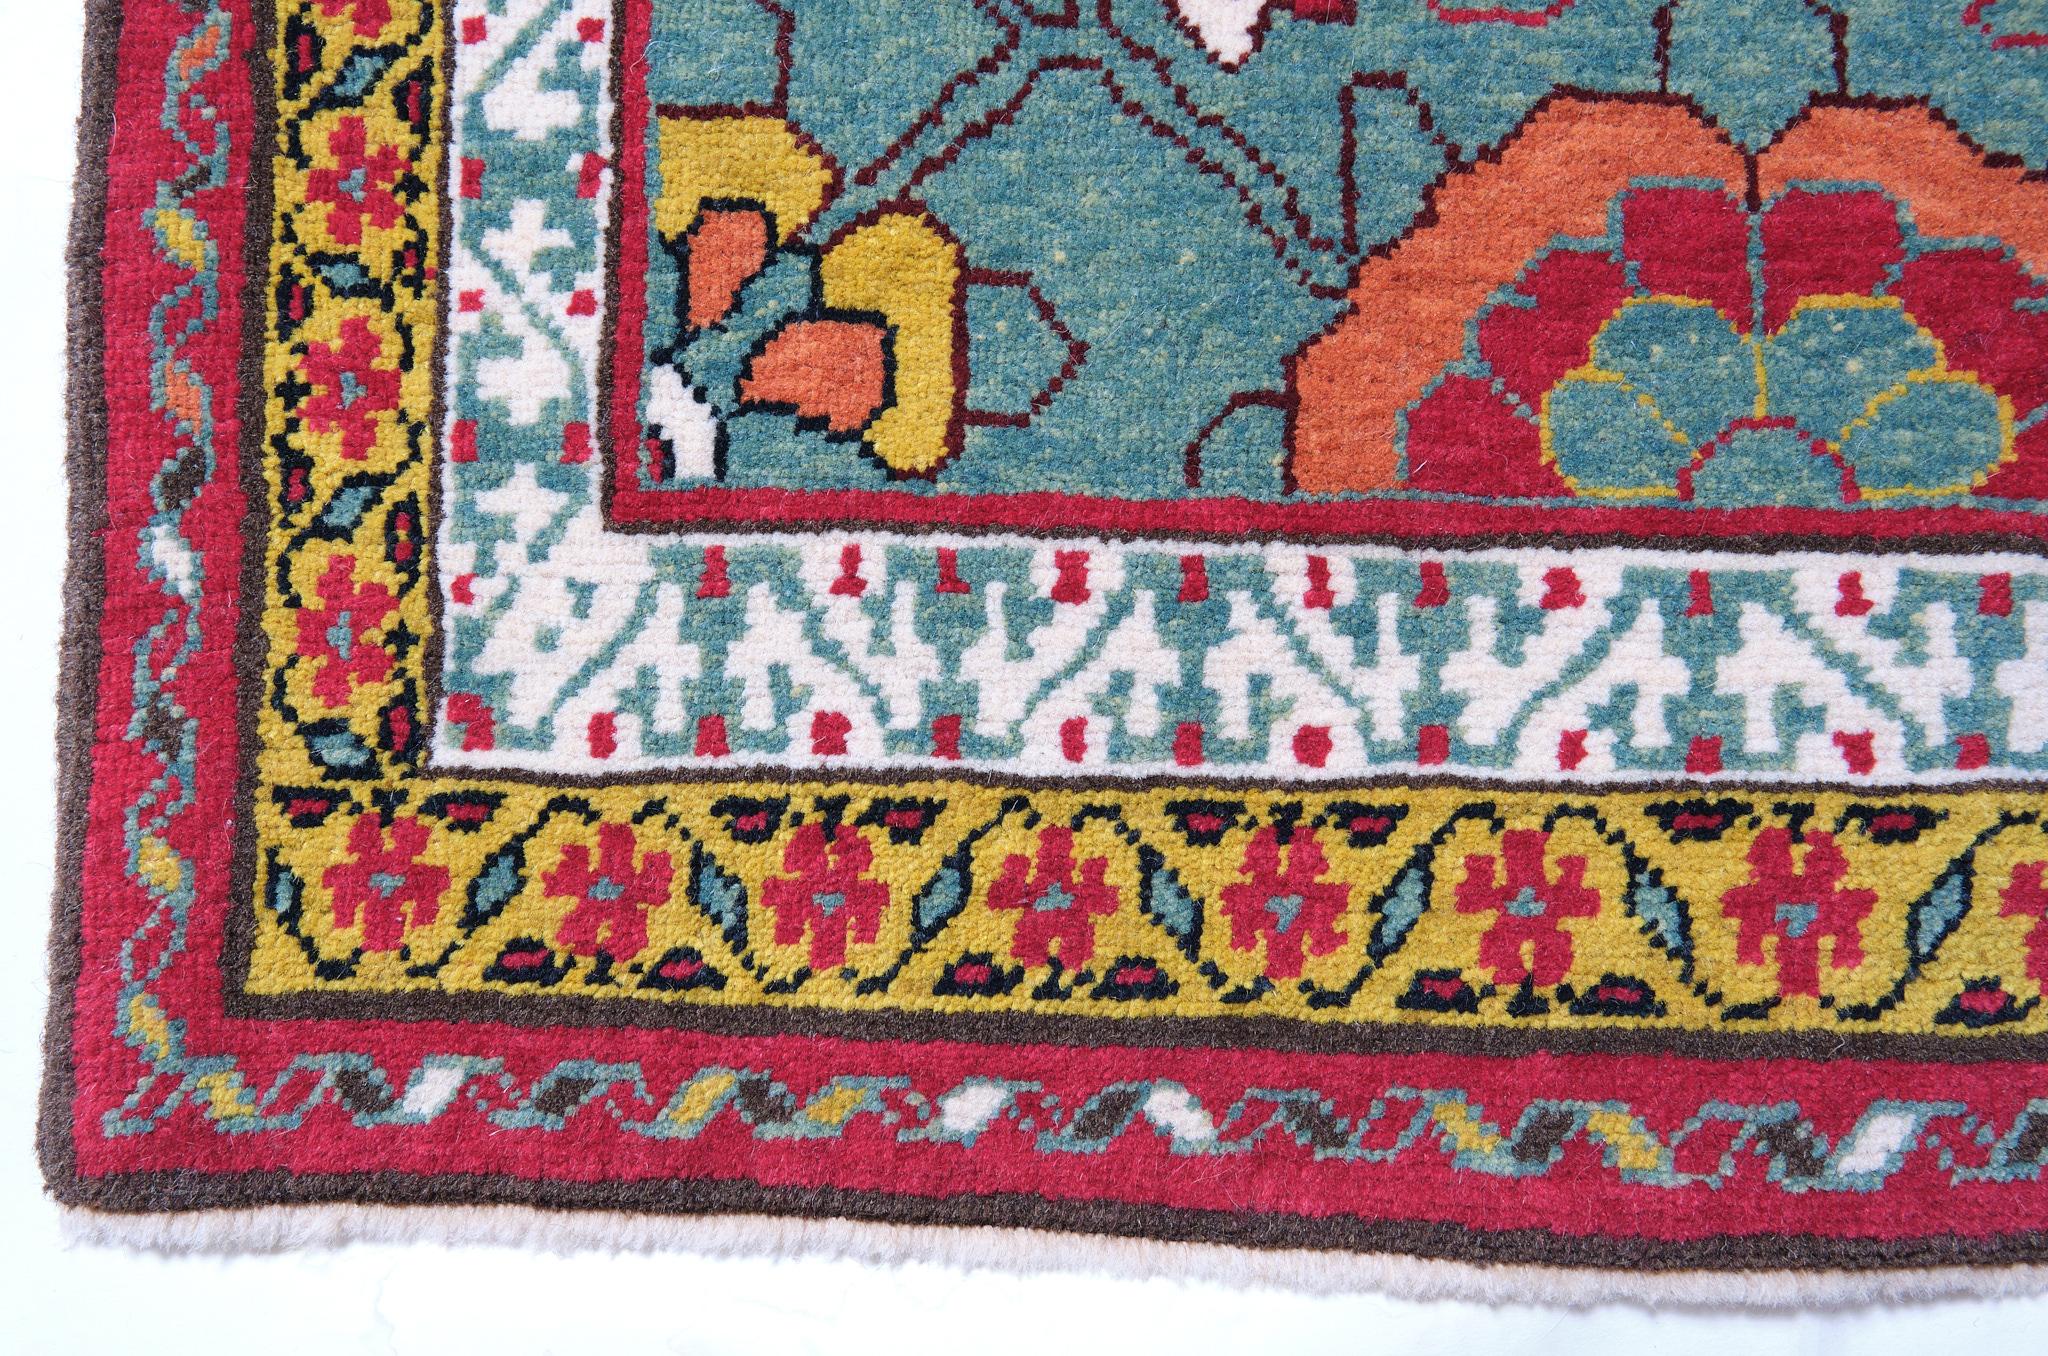 Die Quelle des Teppichs stammt aus dem Buch Antique Rugs of Kurdistan A Historical Legacy of Woven Art, James D. Burns, 2002 nr.4. Es handelt sich um ein exklusives Exemplar eines Teppichs mit Mina Khani-Gittermuster aus der Mitte des 19.